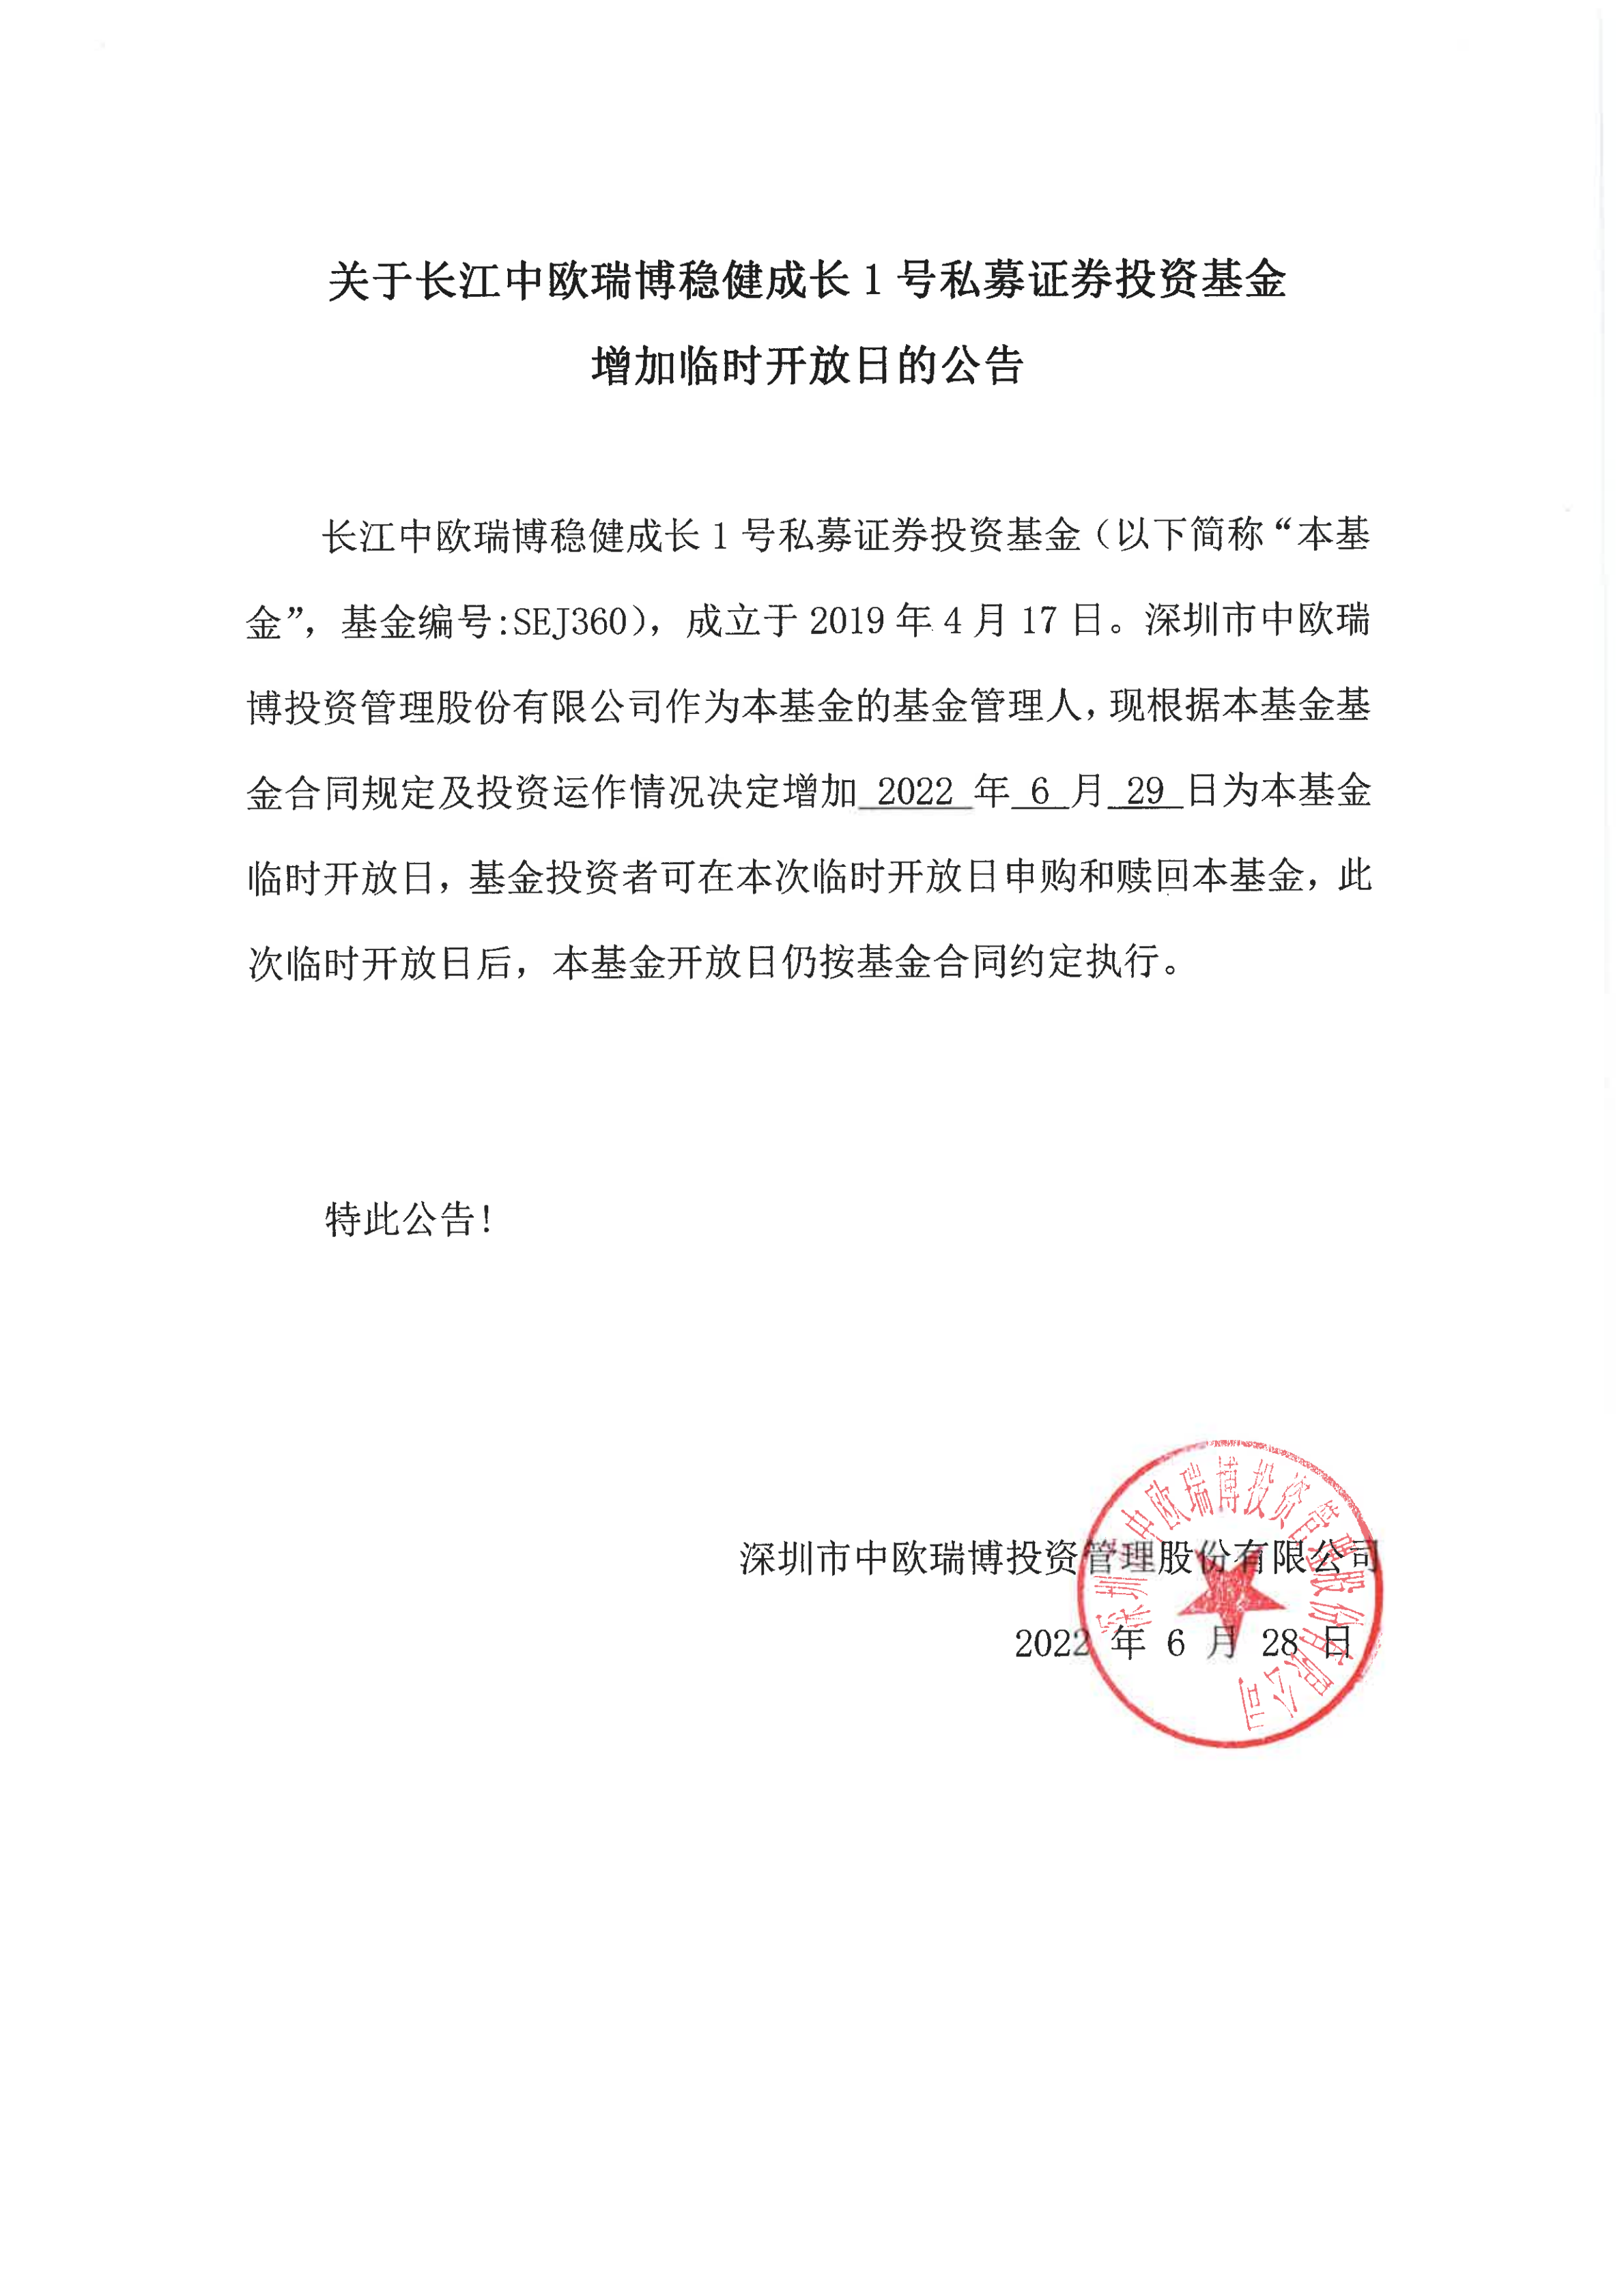 关于长江中欧瑞博稳健成长1号私募证券投资基金增加临时开放日的公告-20220629_00.png